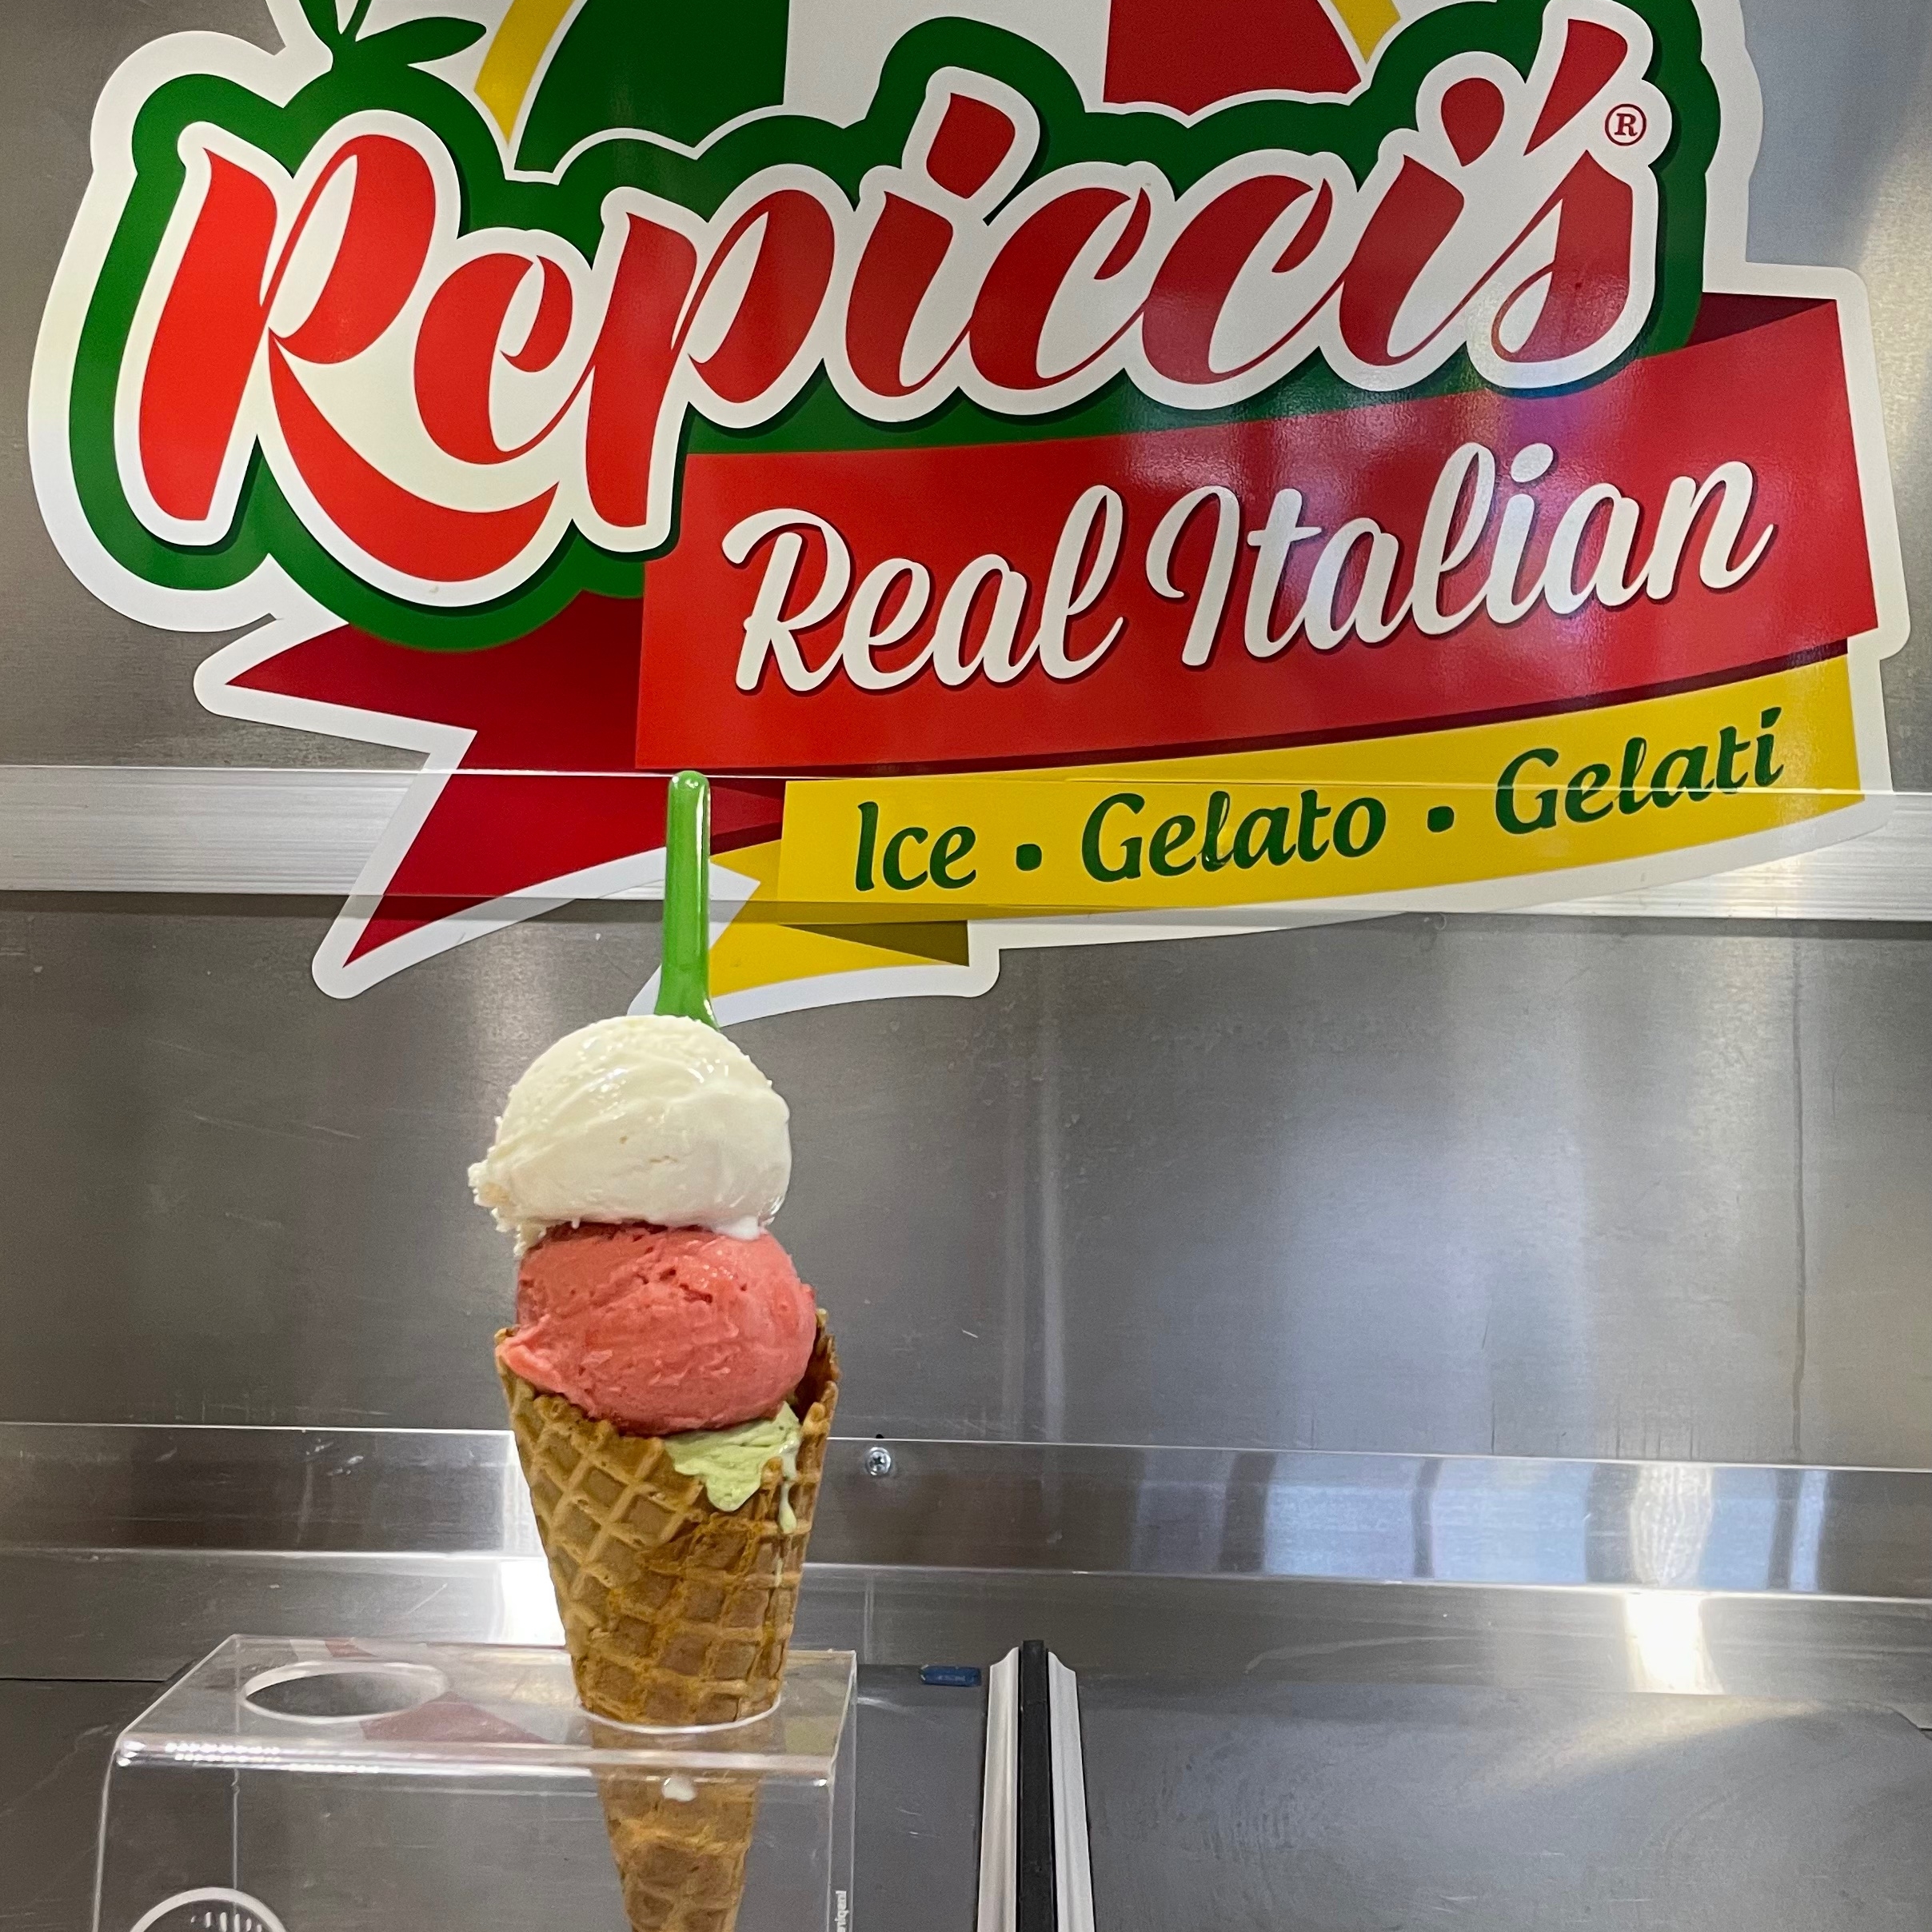 Repicci’s Italian Ice and Gelato